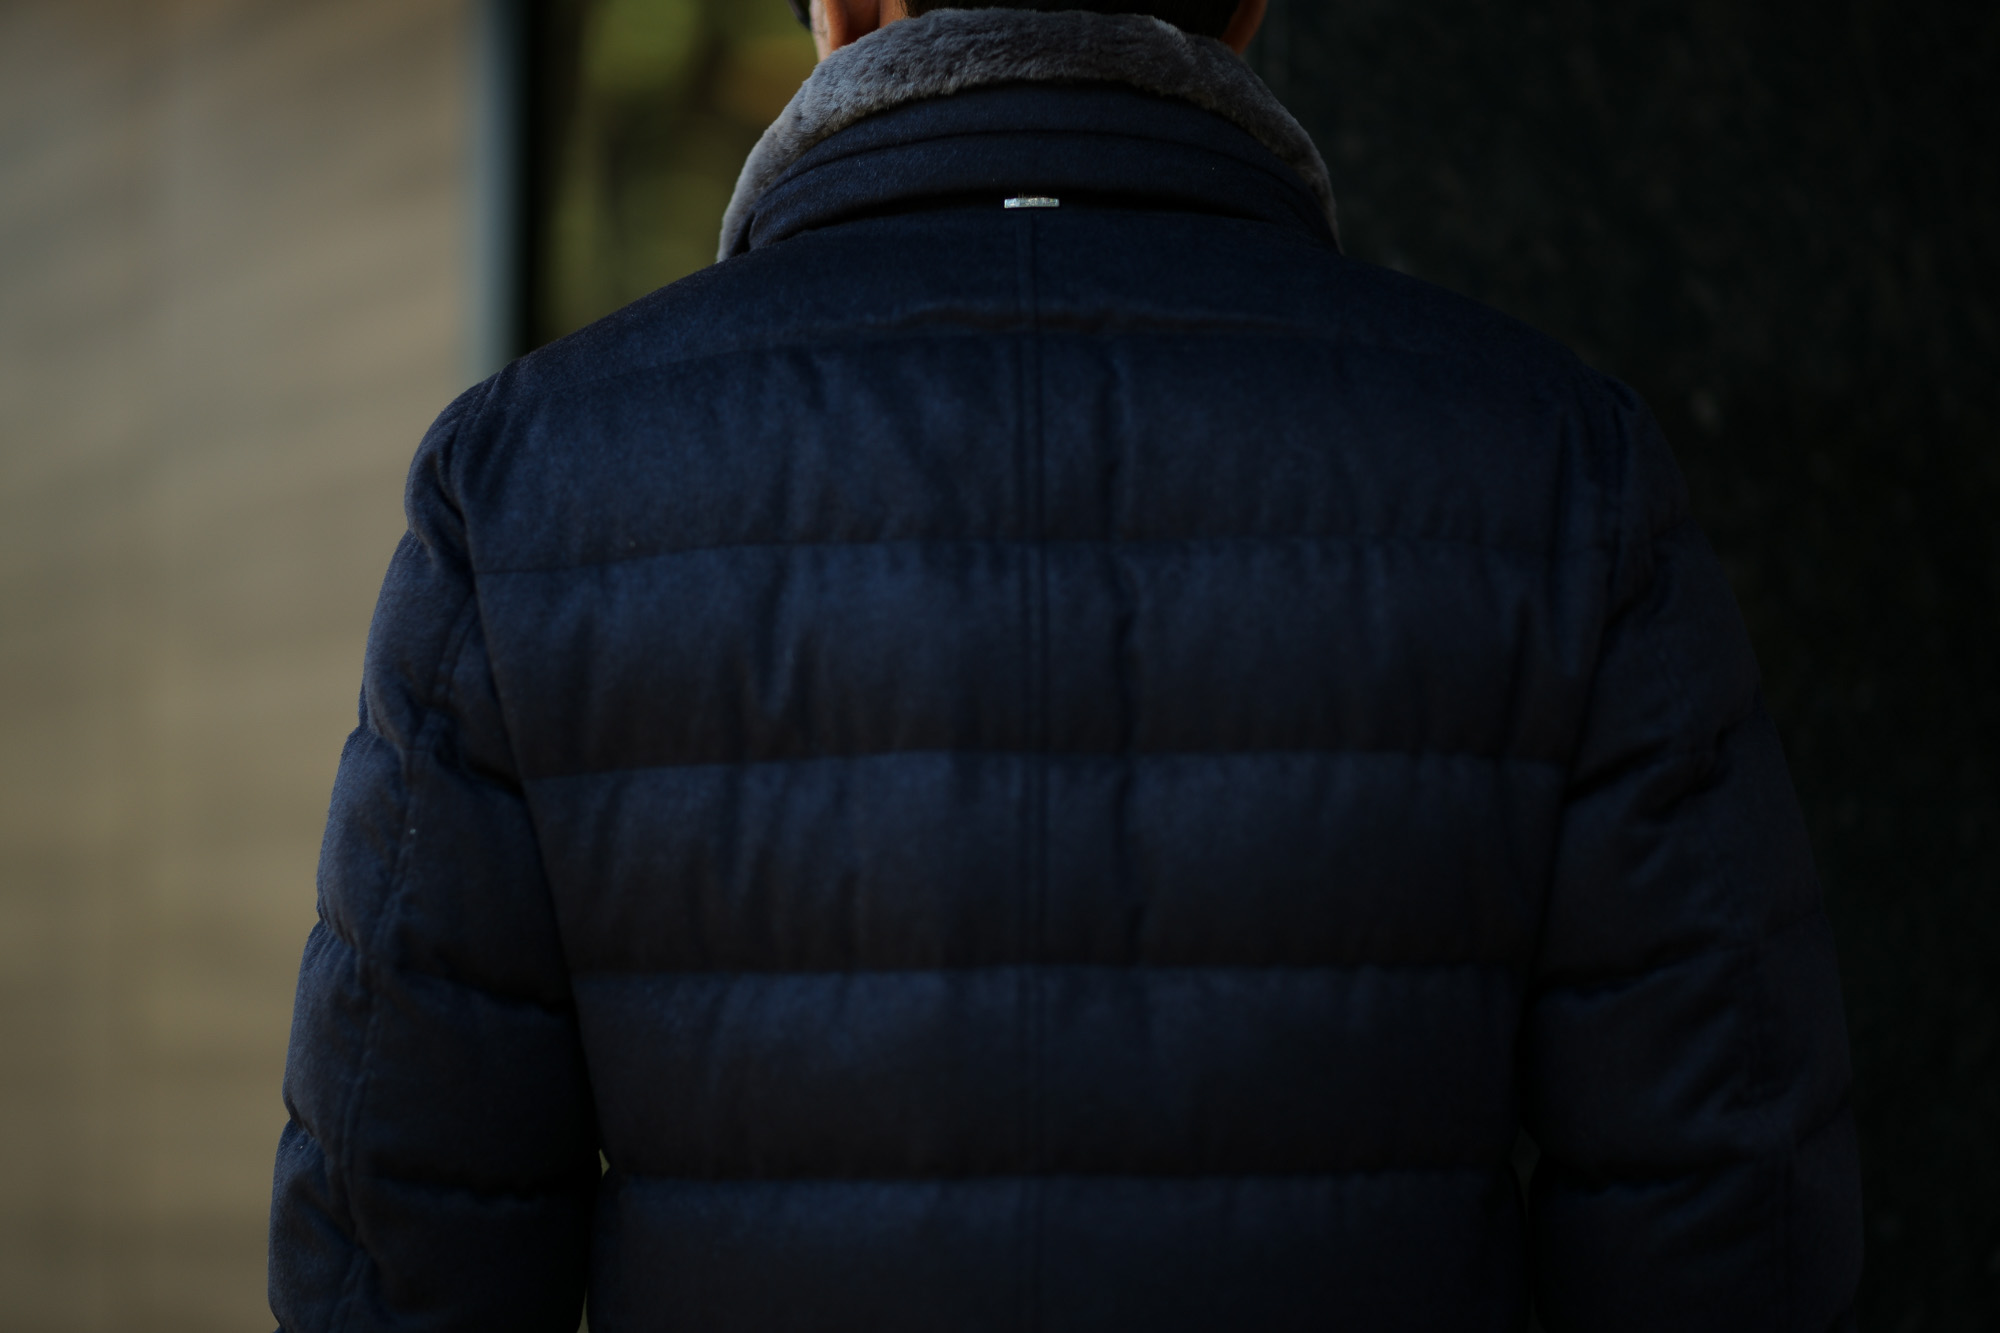 HERNO(ヘルノ) PI0439U Silk Cashmere Down coat (シルク カシミア ダウン コート) PIACENZA (ピアツェンツァ) DROP GLIDE NYLON ULTRALIGHT 撥水 シルク カシミア ダウン コート NAVY (ネイビー・9200) Made in italy (イタリア製) 2018 秋冬新作 alto e dirittoアルトエデリット 42,44,46,48,50,52